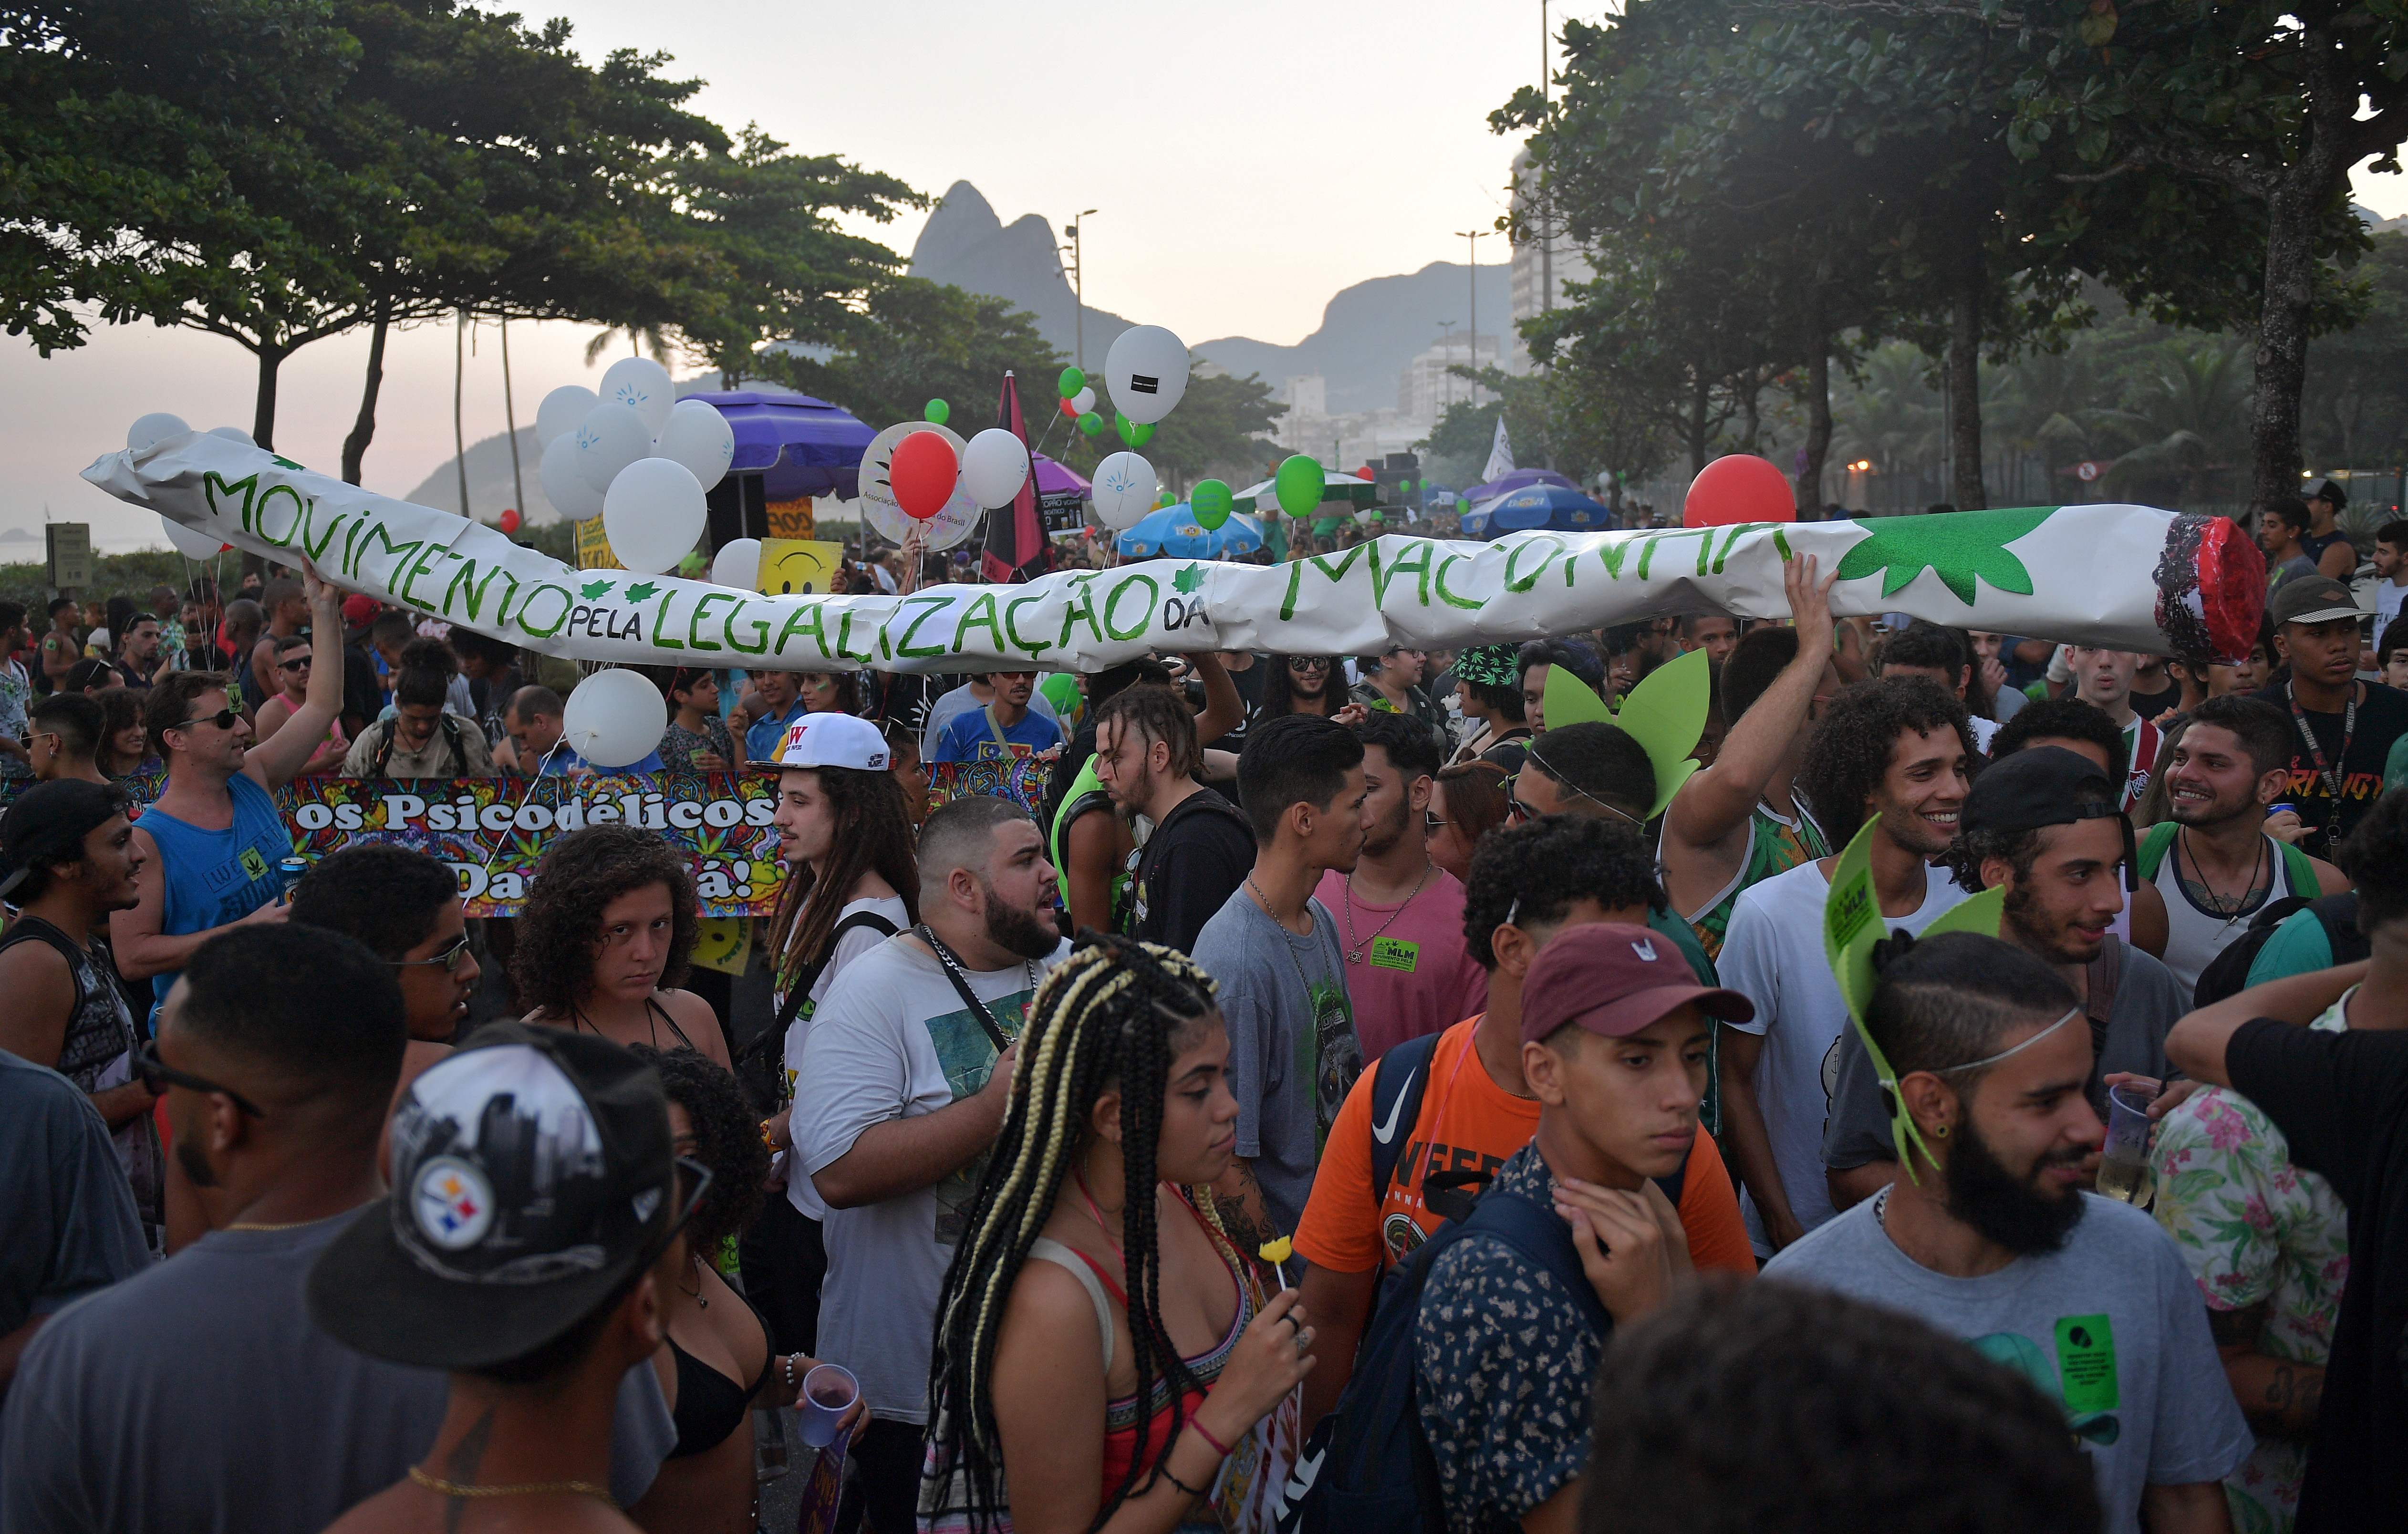 جانب من مسيرة الماريجوانا فى البرازيل